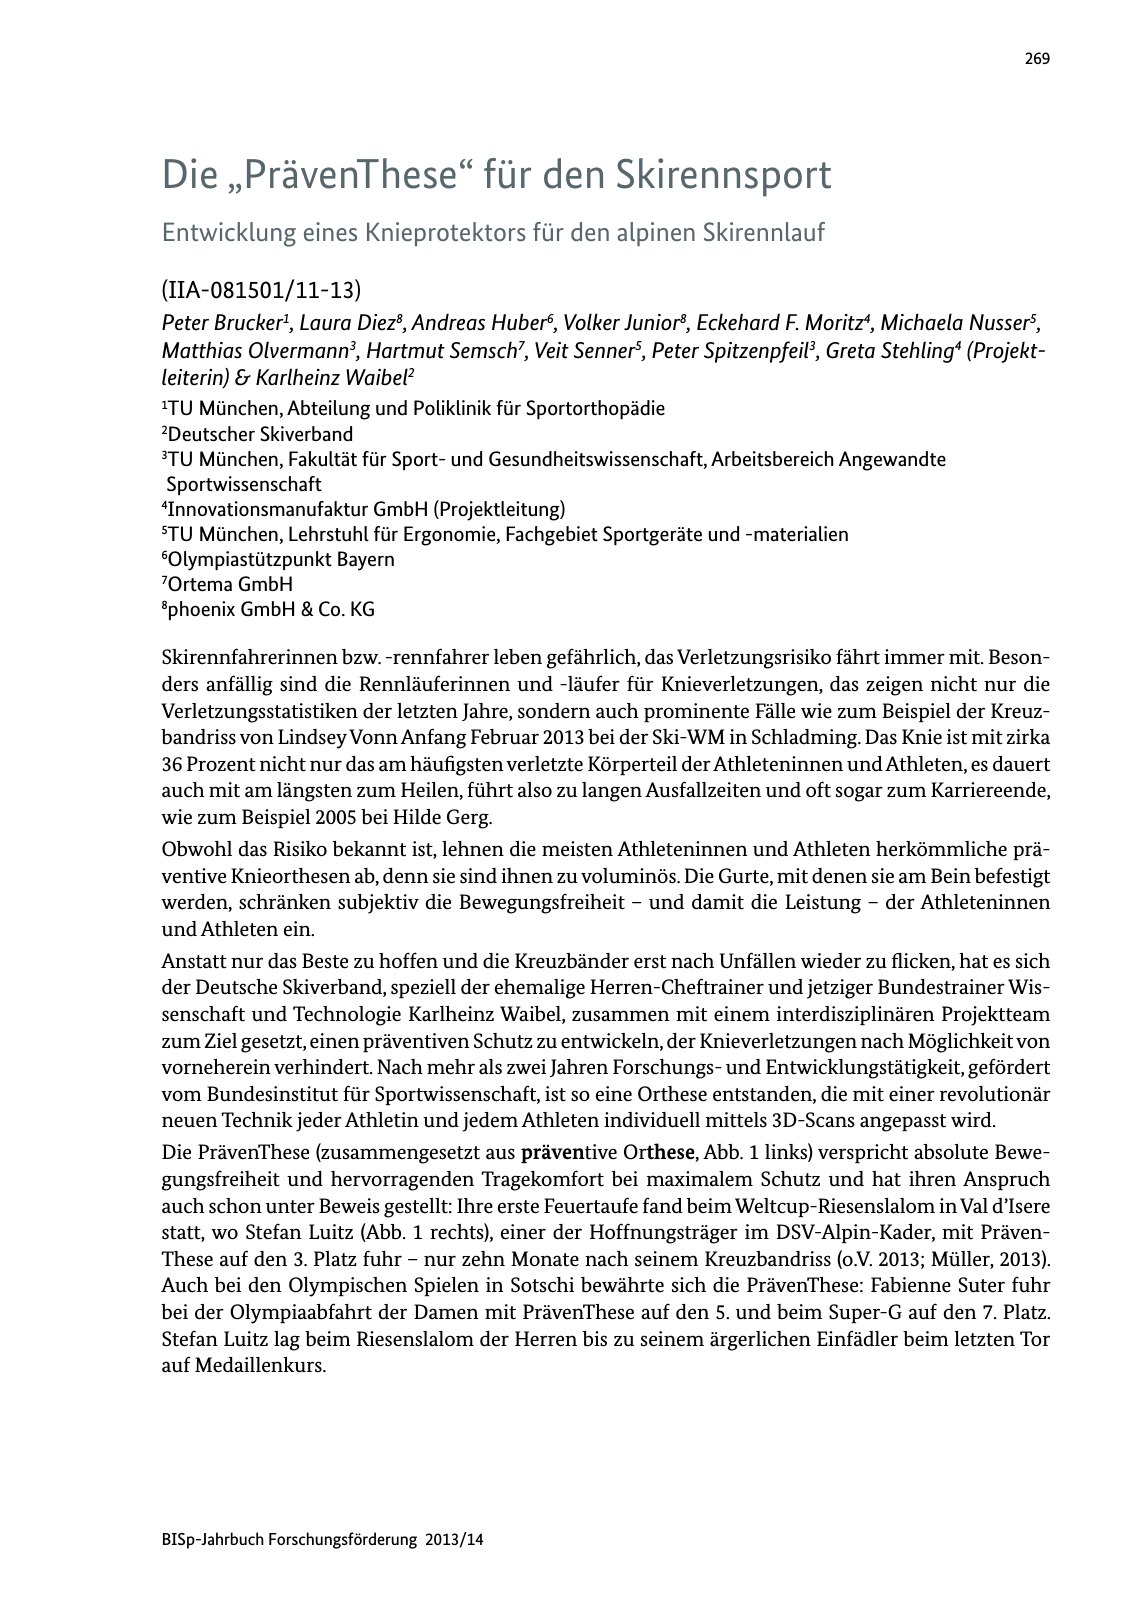 Vorschau BISp-Jahrbuch Forschungsförderung 2013/14 Seite 270